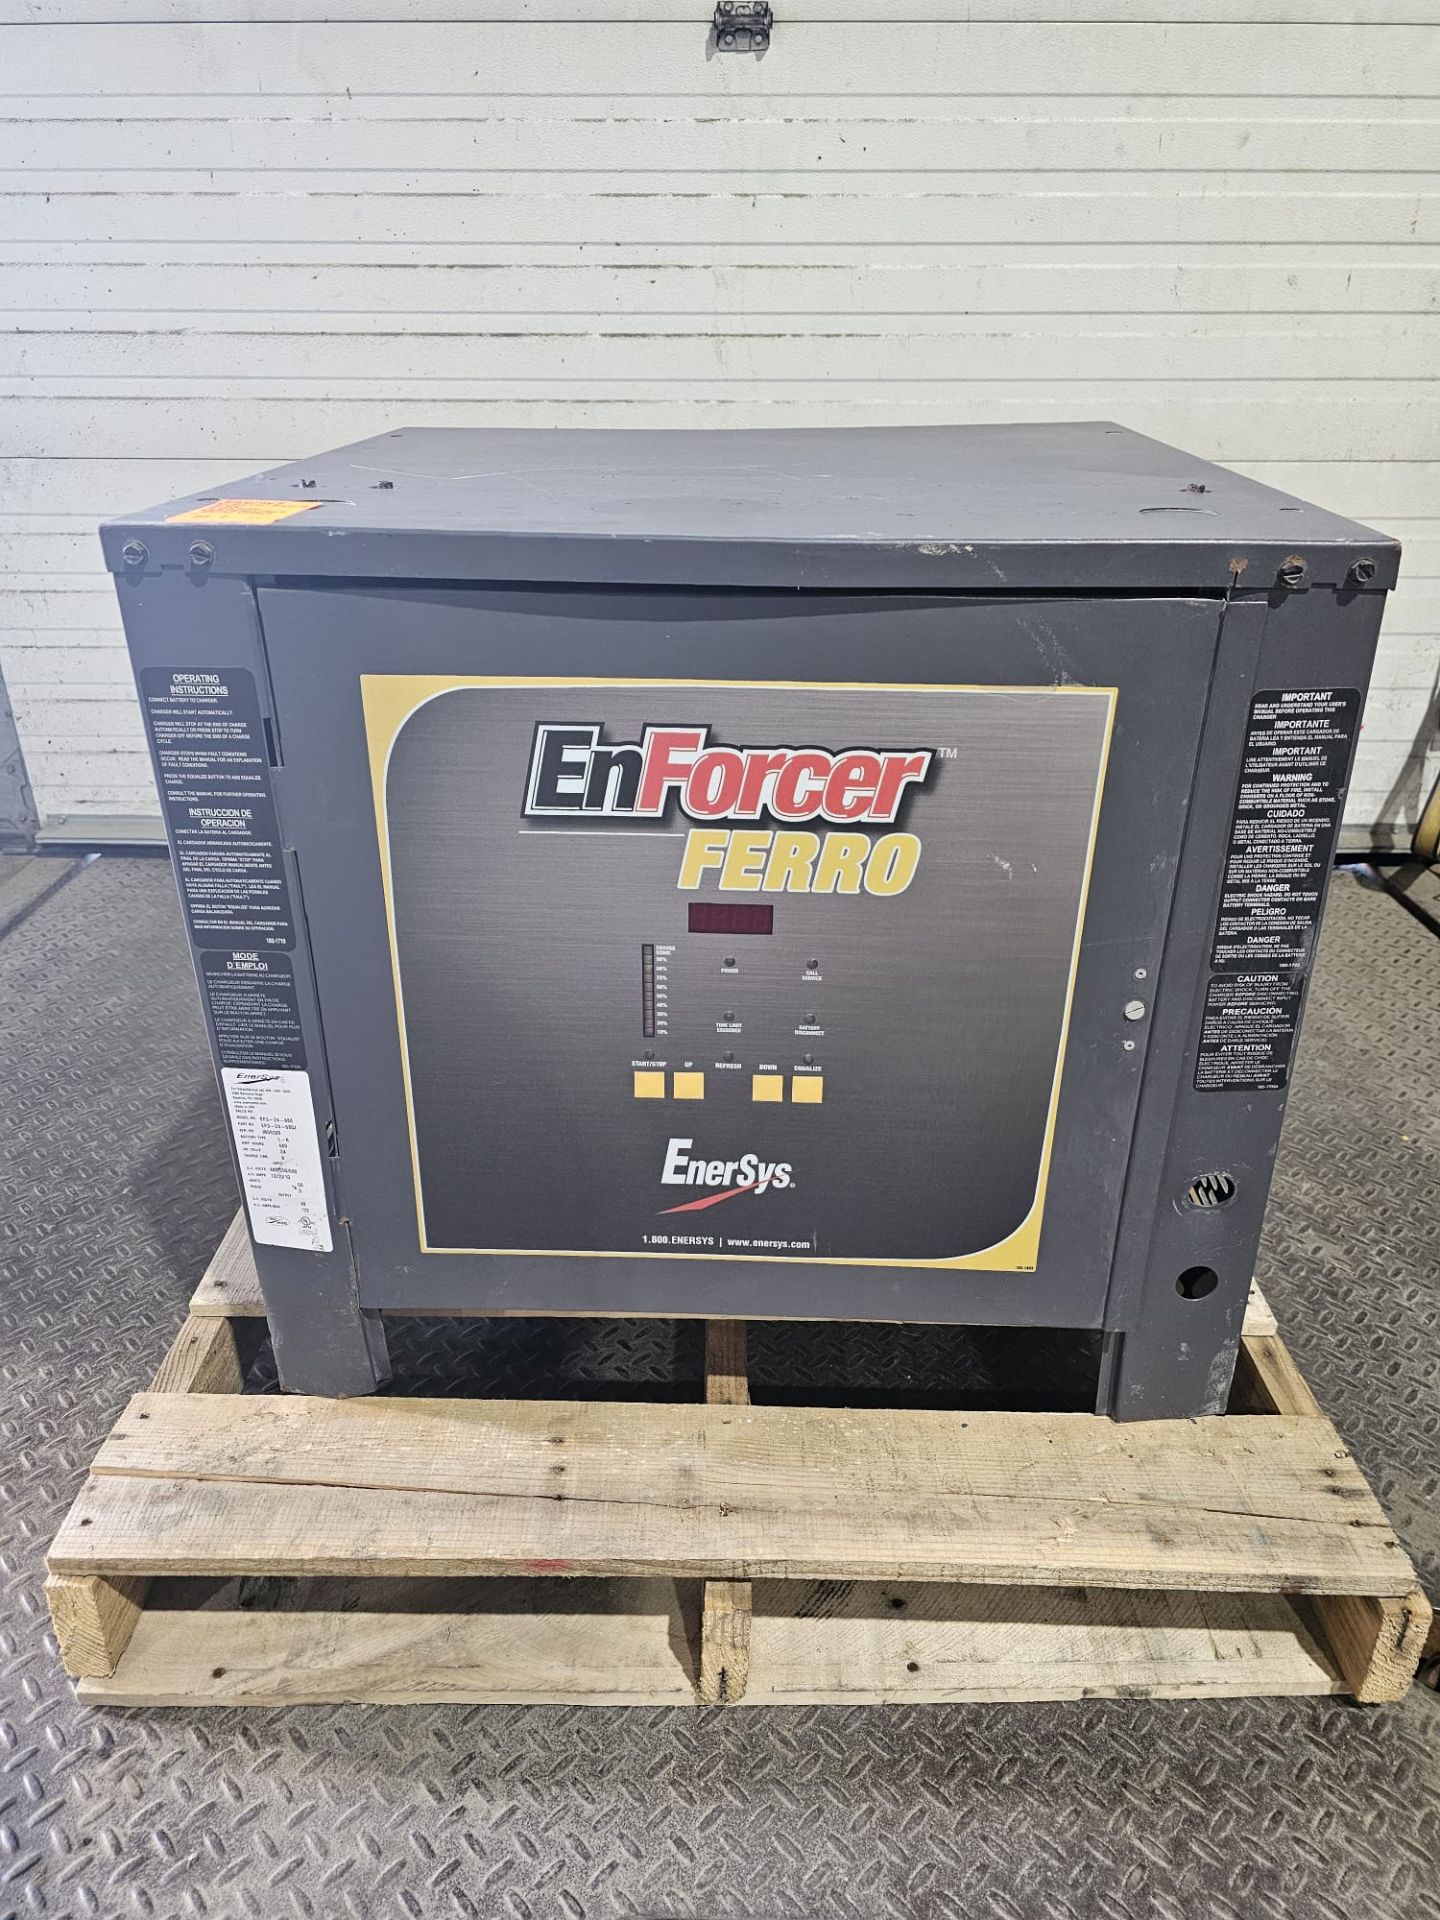 Enersys Enforcer Ferro 48V Forklift Battery Charger 3 phase 480 550 and 600 Volt input